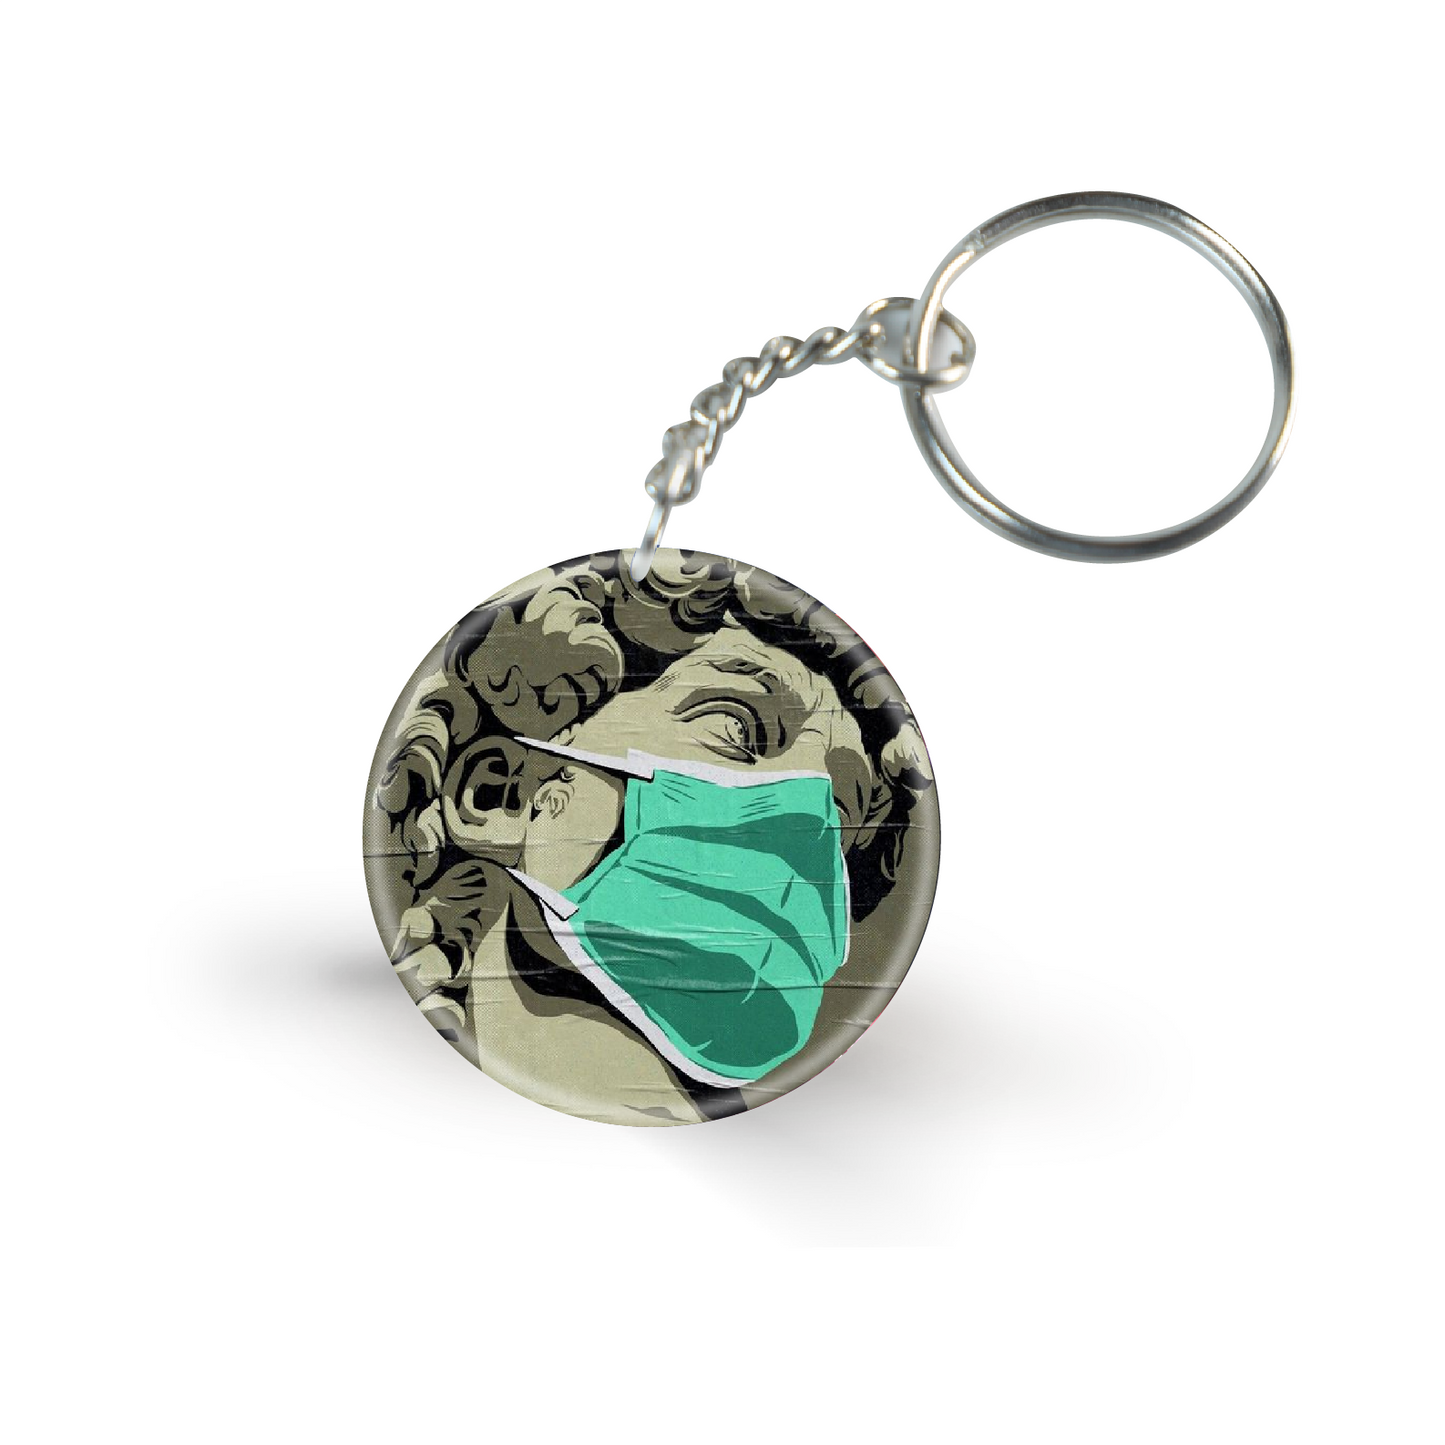 Sculpture Mask- Keychain